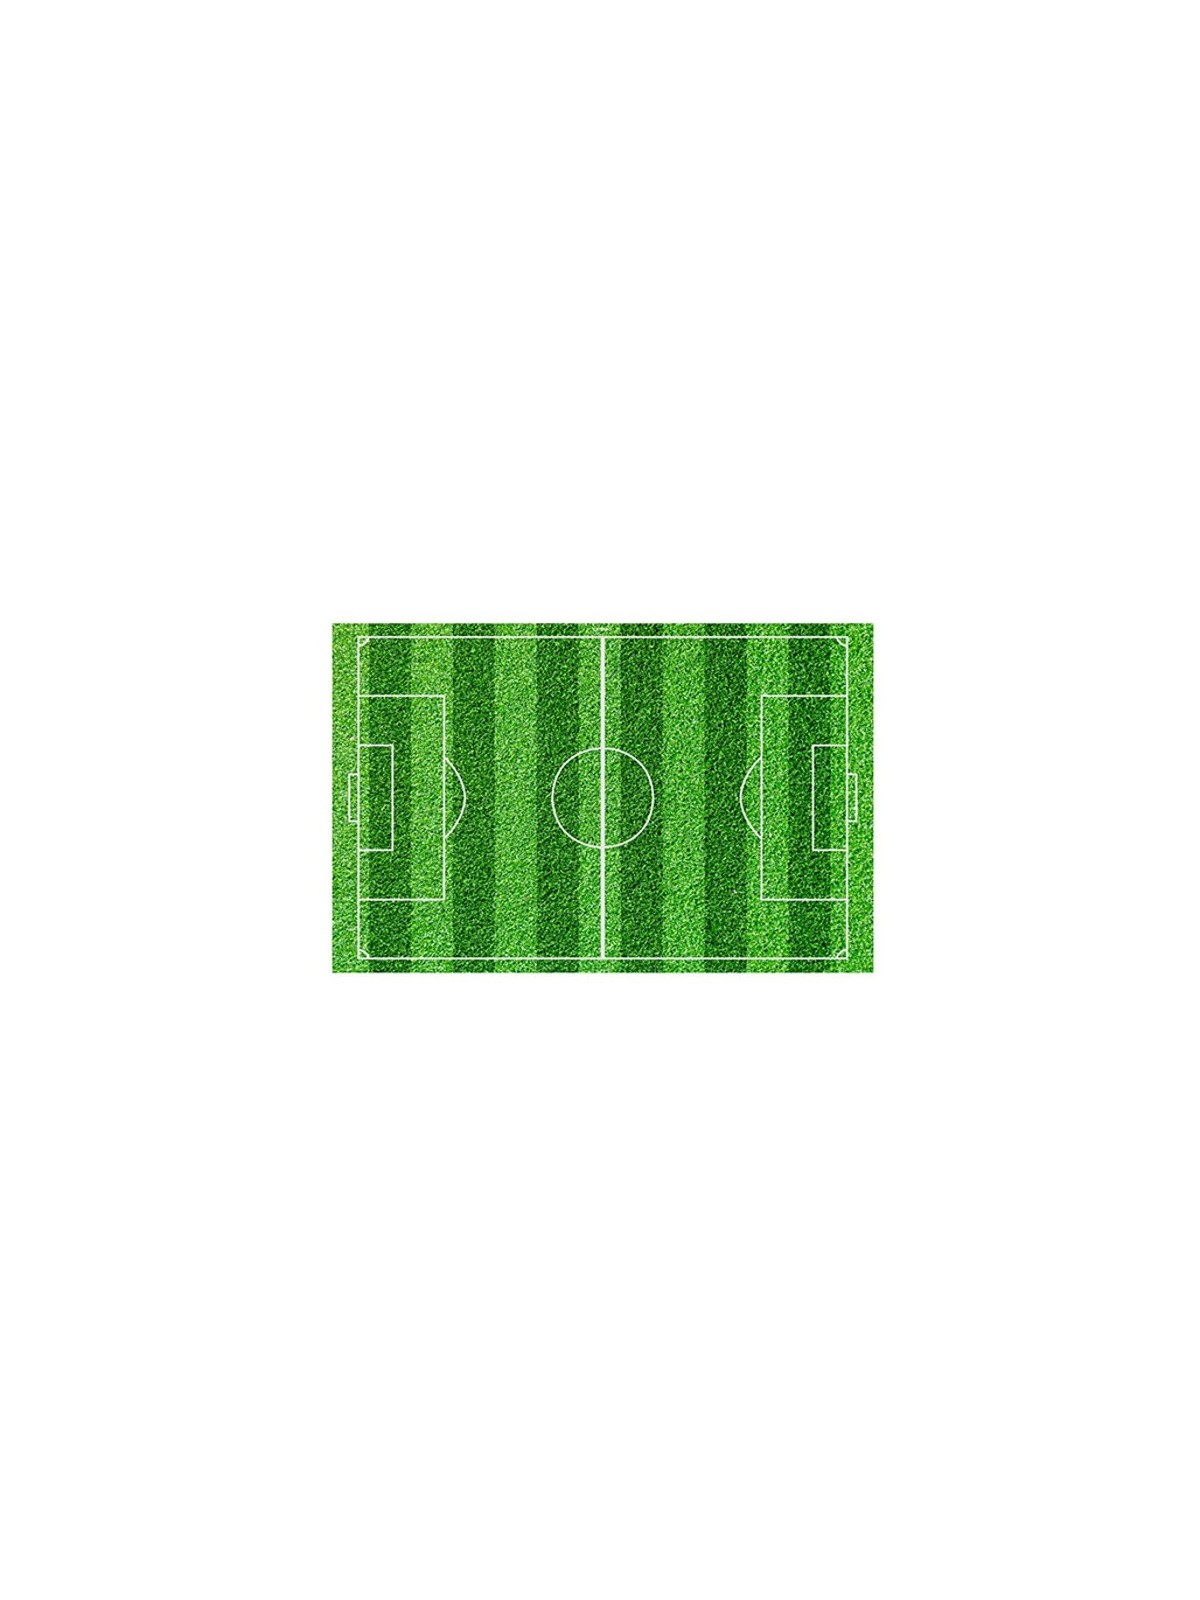 Dekora Essbare Papier Rechteck - Fußballfeld - 20 x 30cm  - 1St